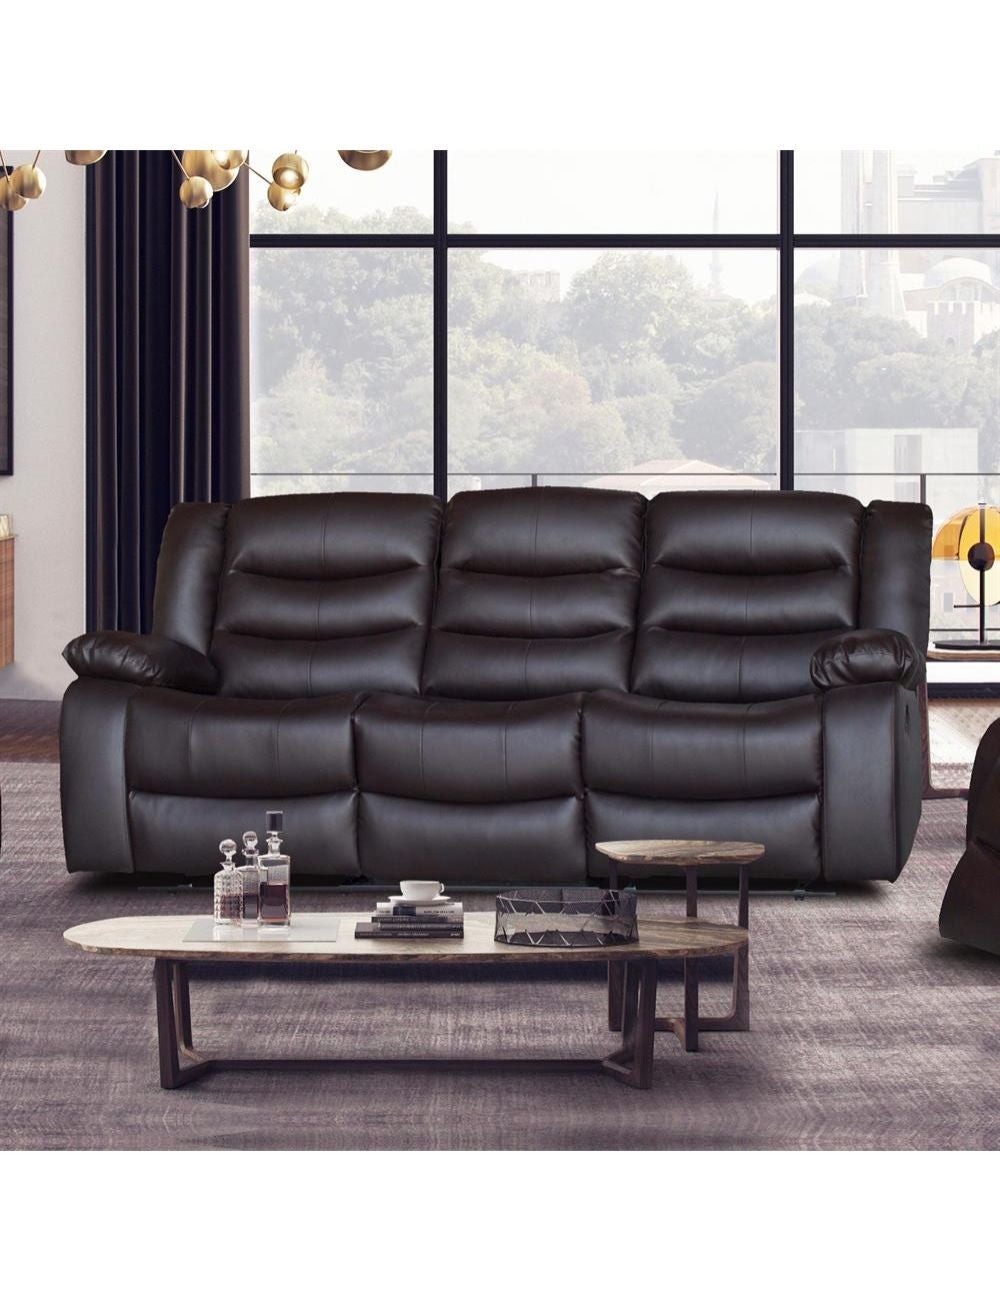 2483 Sofa Suite  Decor-Rest Furniture Ltd.